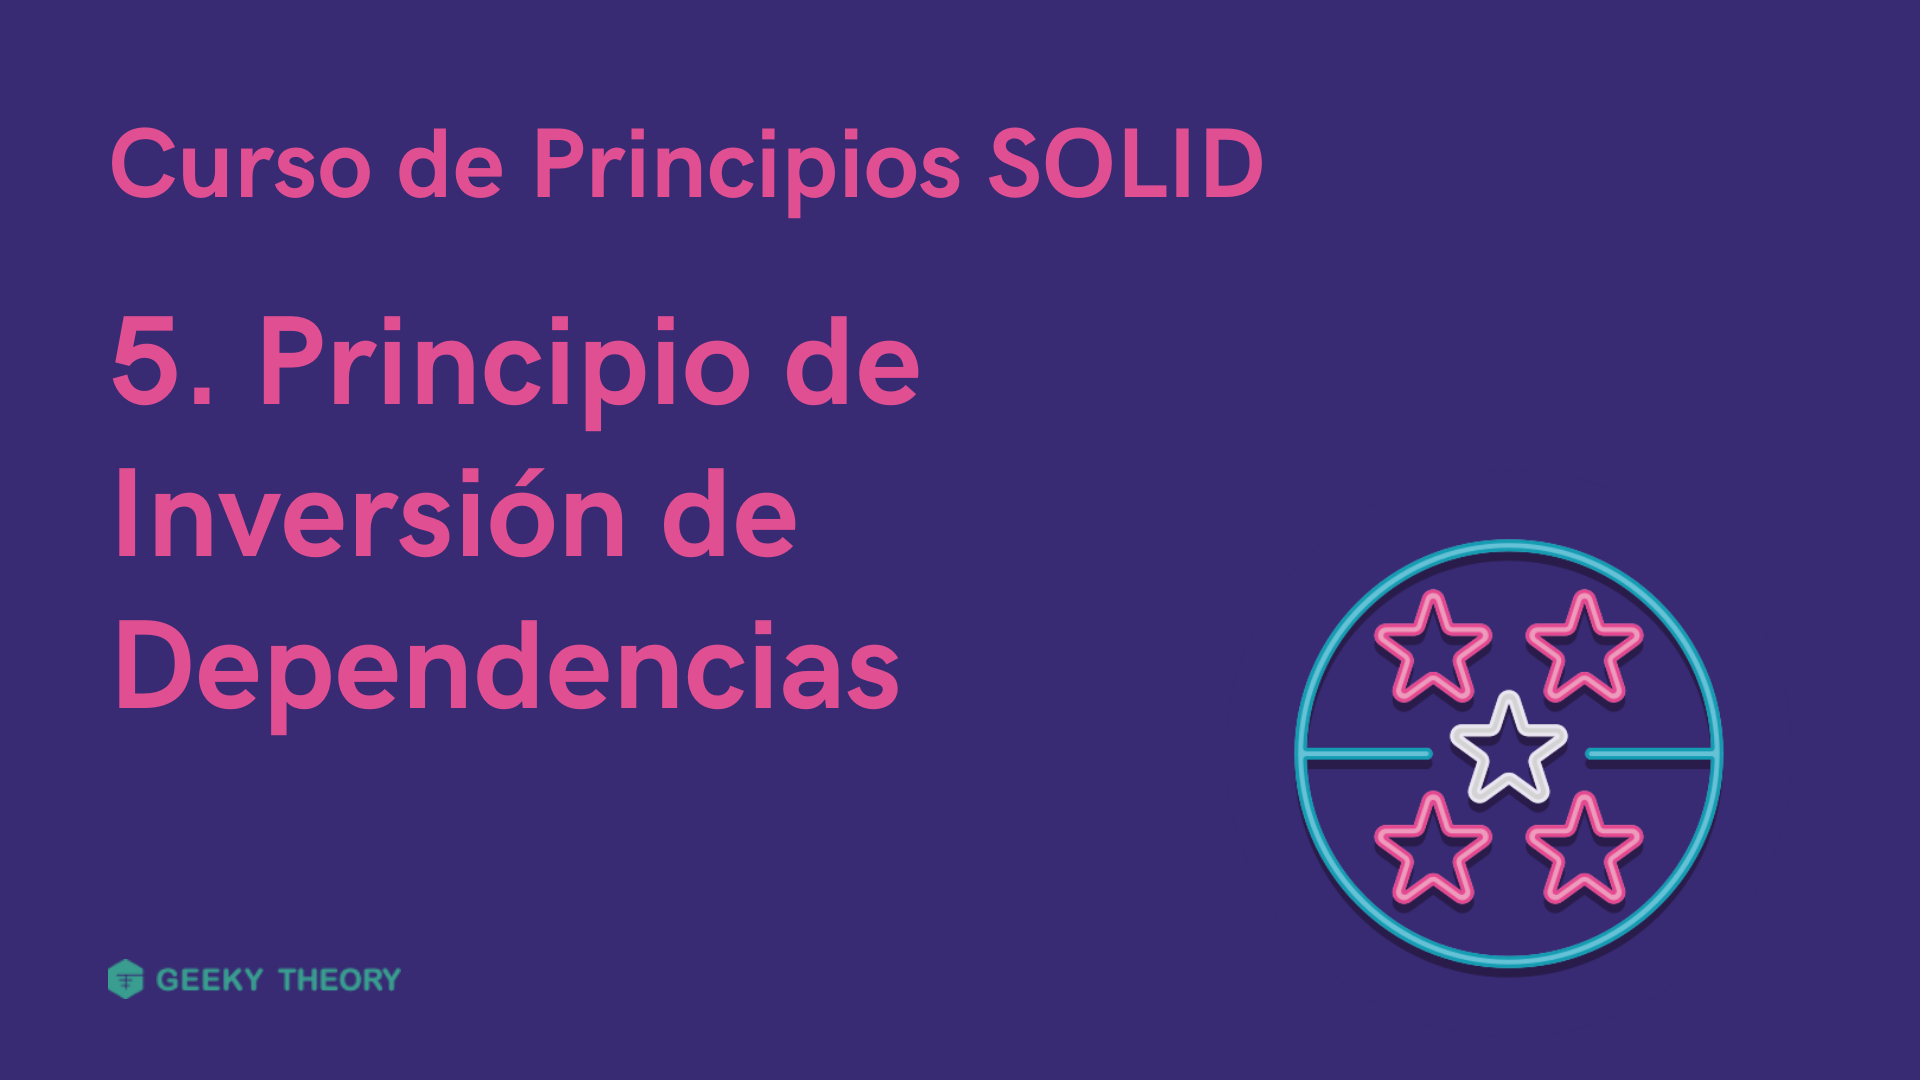 Curso Principios SOLID - 5. Principio de Inversión de Dependencias